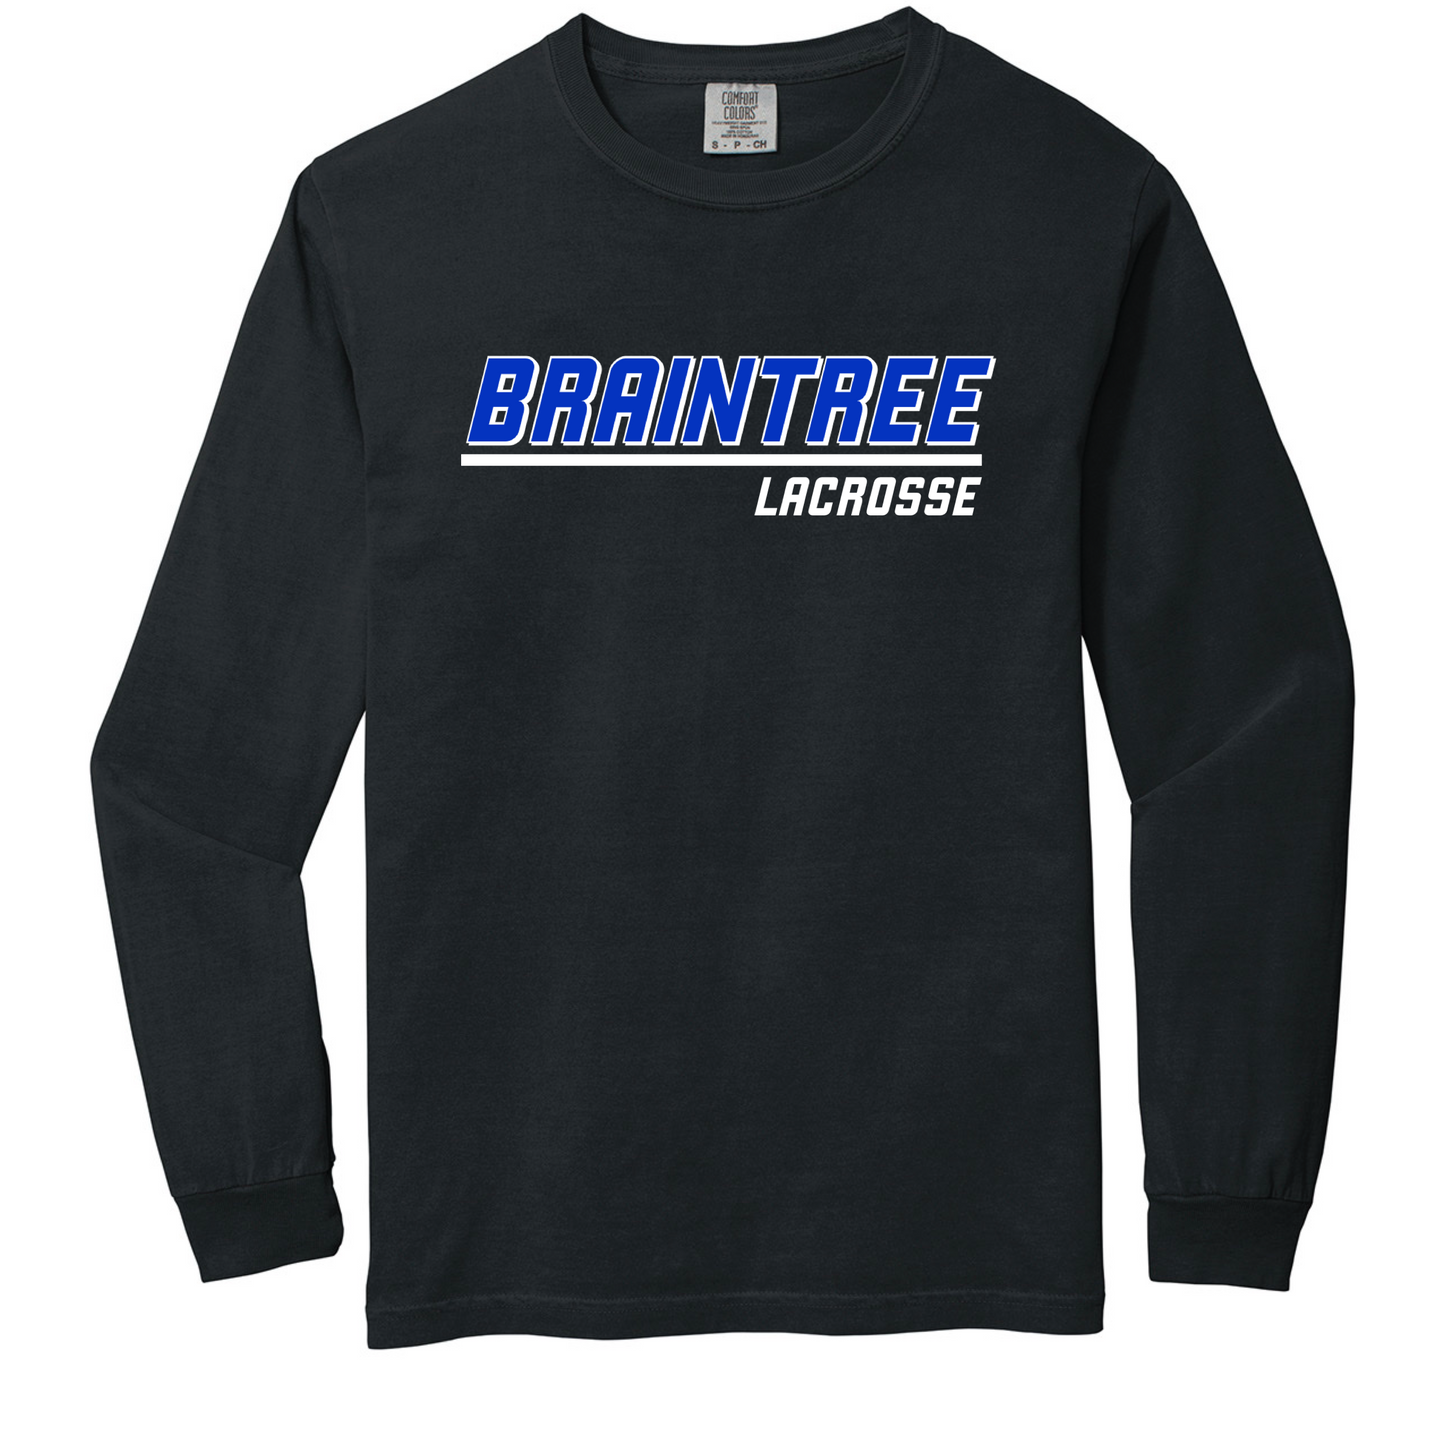 Braintree Lacrosse long sleeve shirt